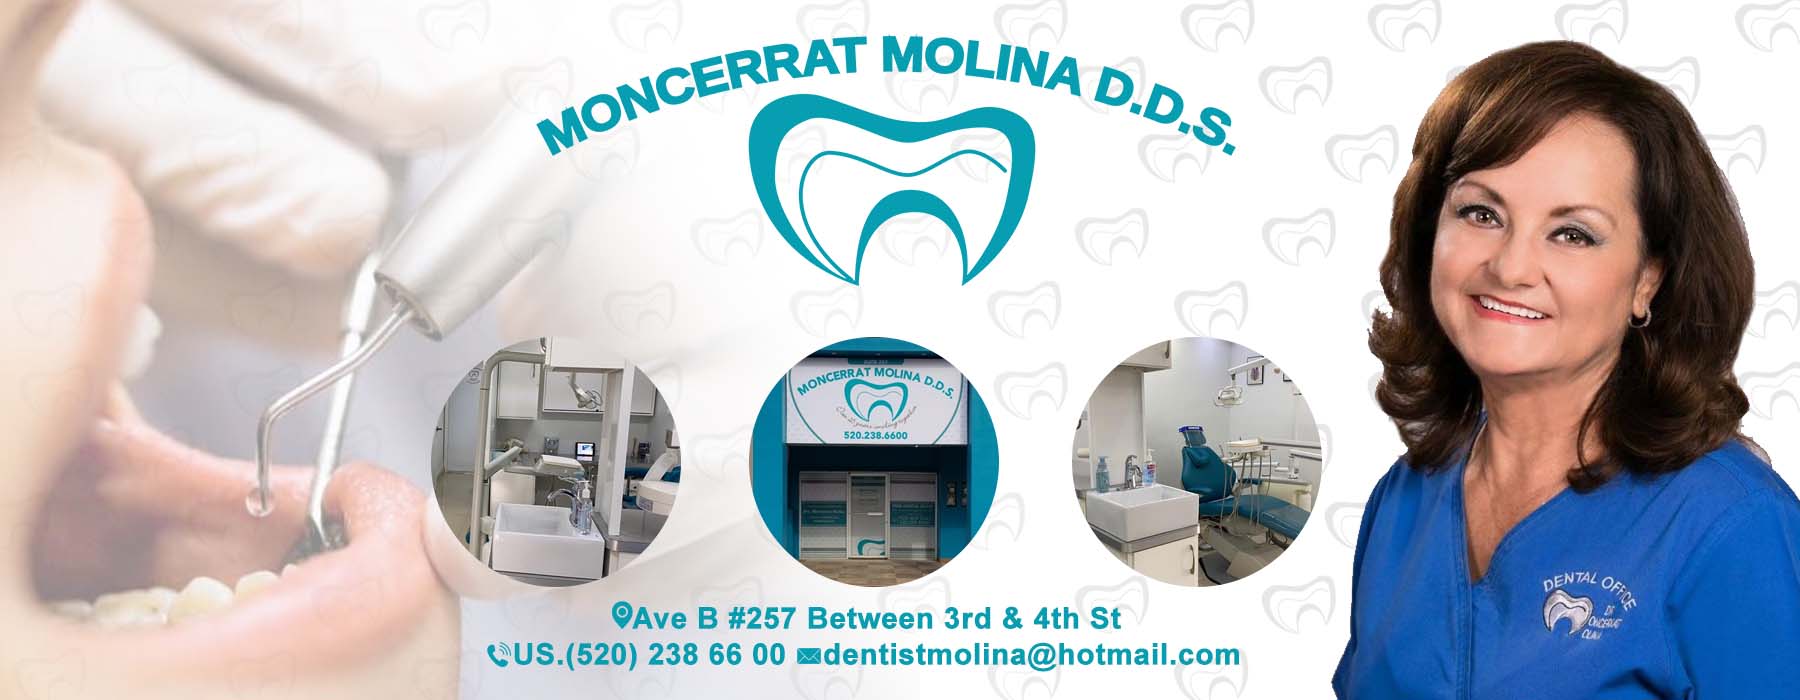  Dra. Moncerrat Molina D.D.S.